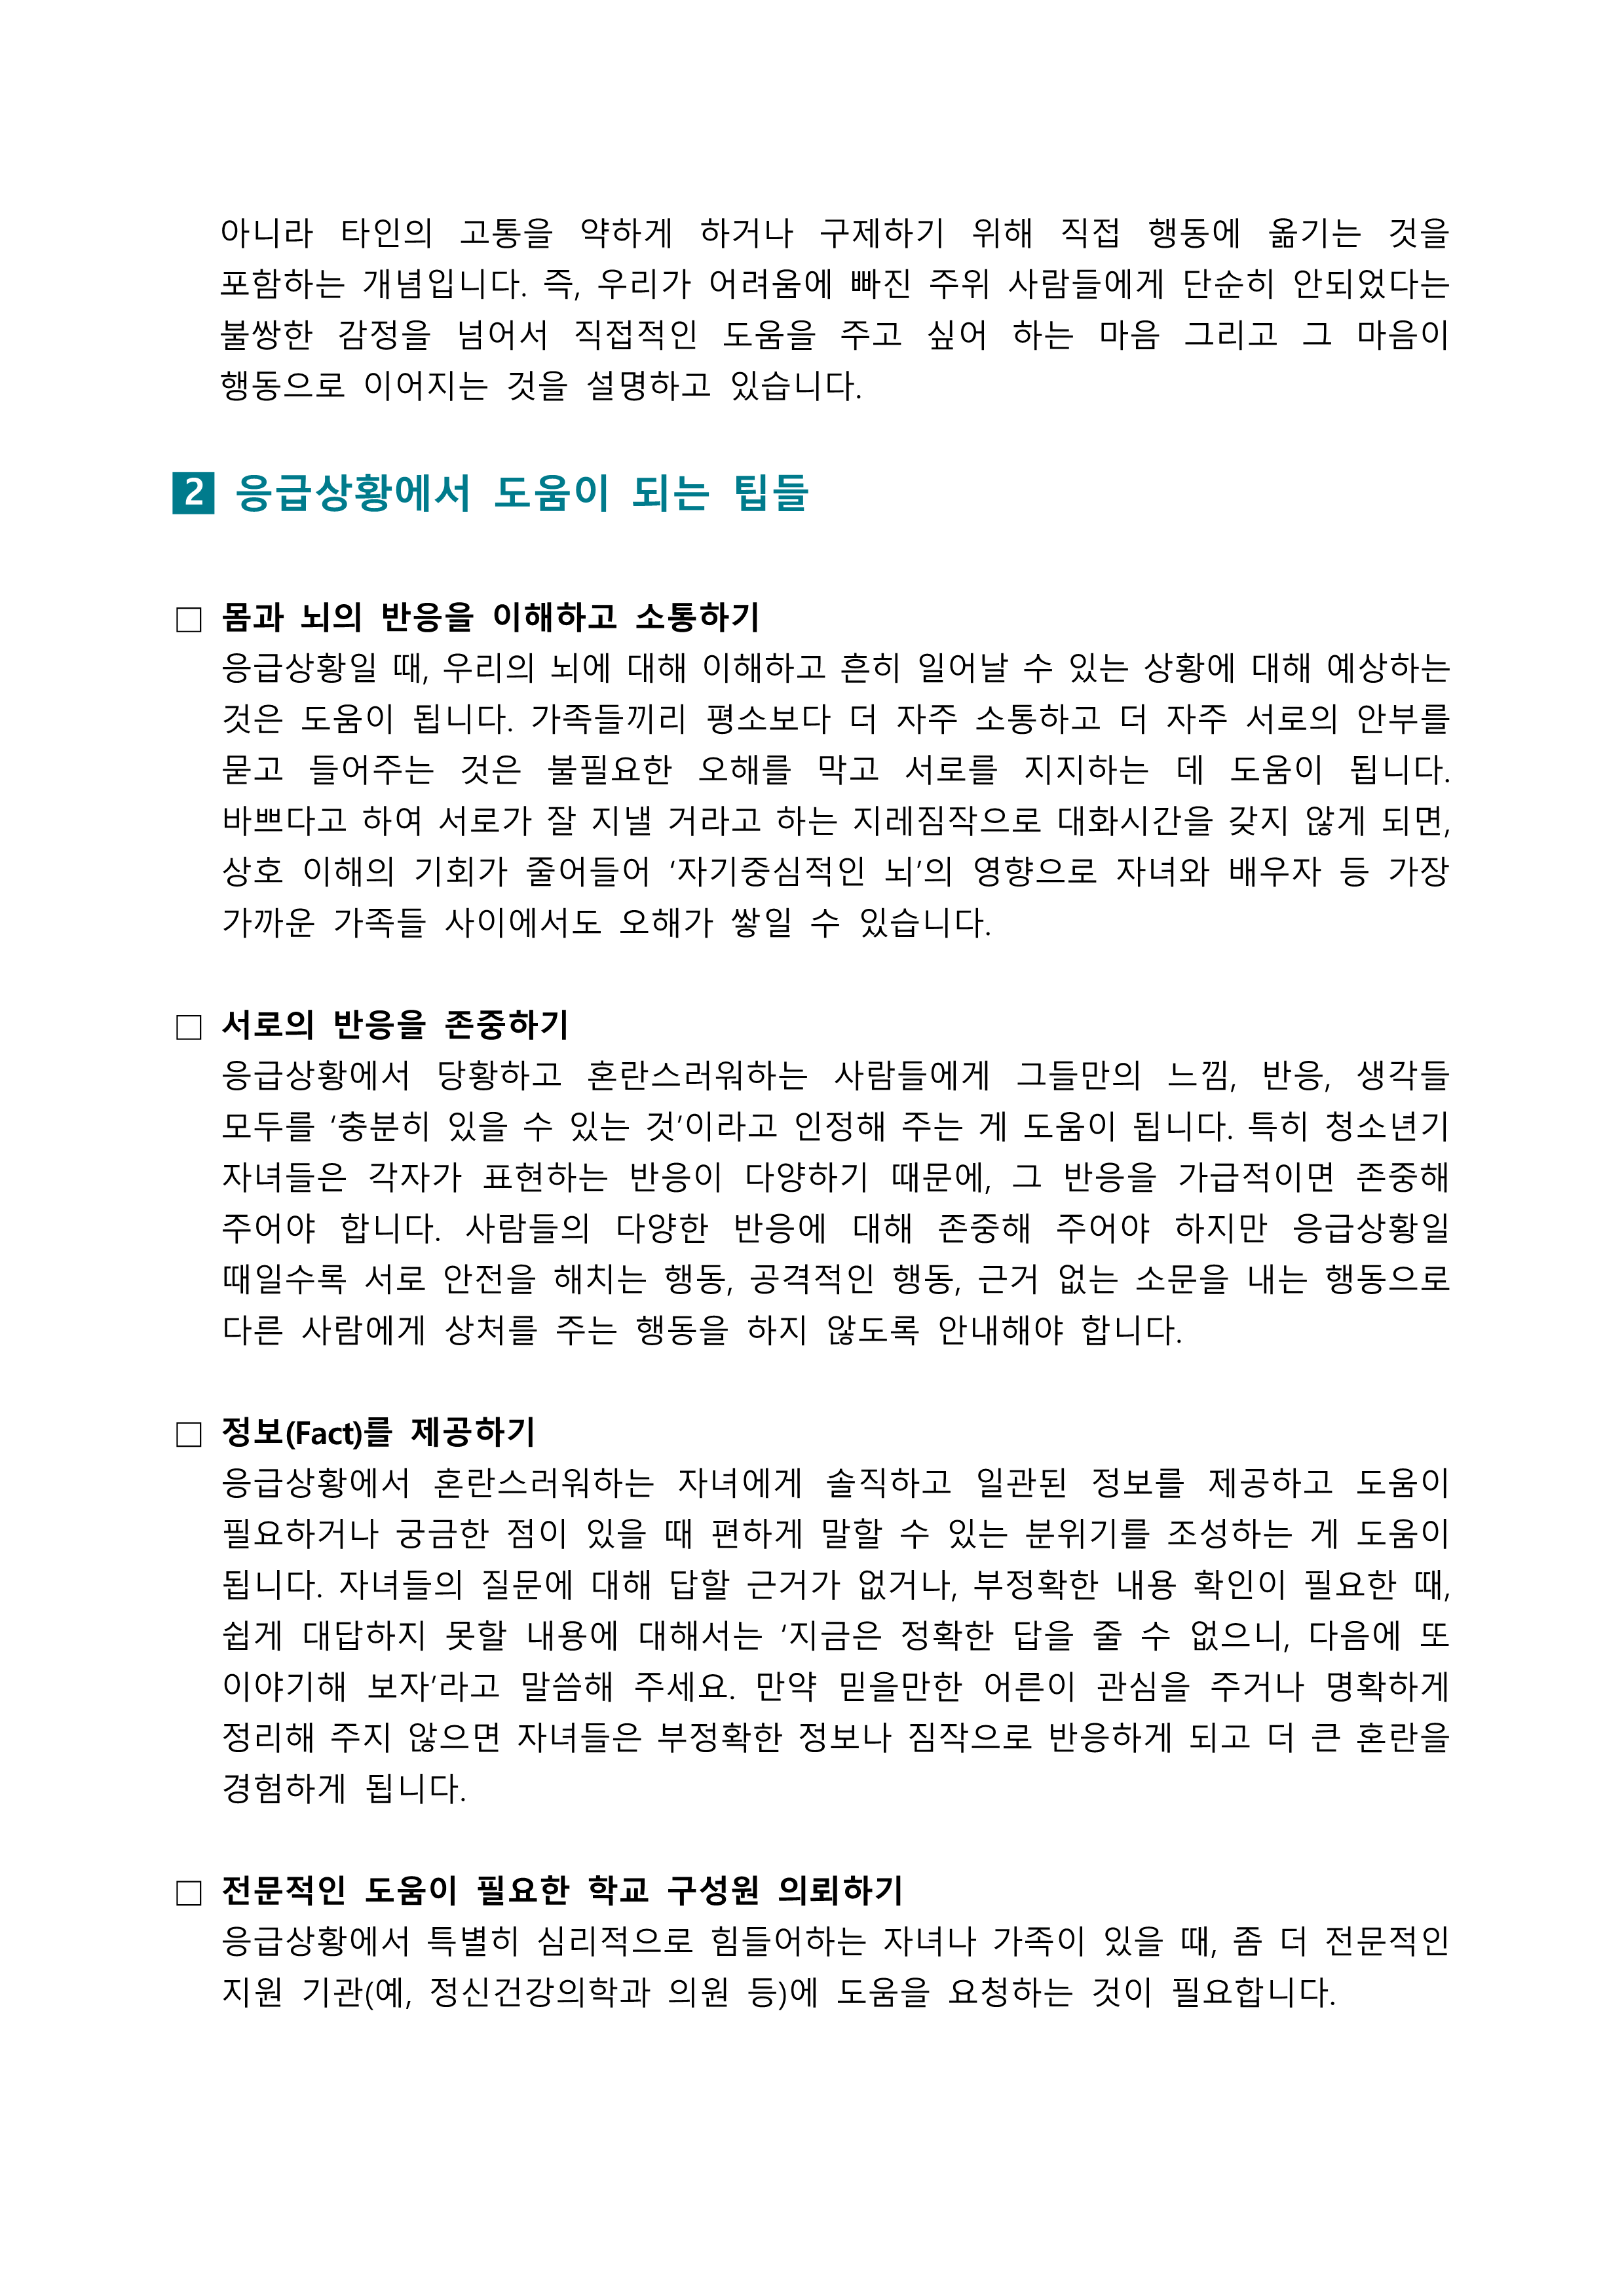 한국교육환경보호원 학생정신건강지원센터_[붙임2] [학부모용(공통)] 뉴스레터 제 2023-7호 _2.png